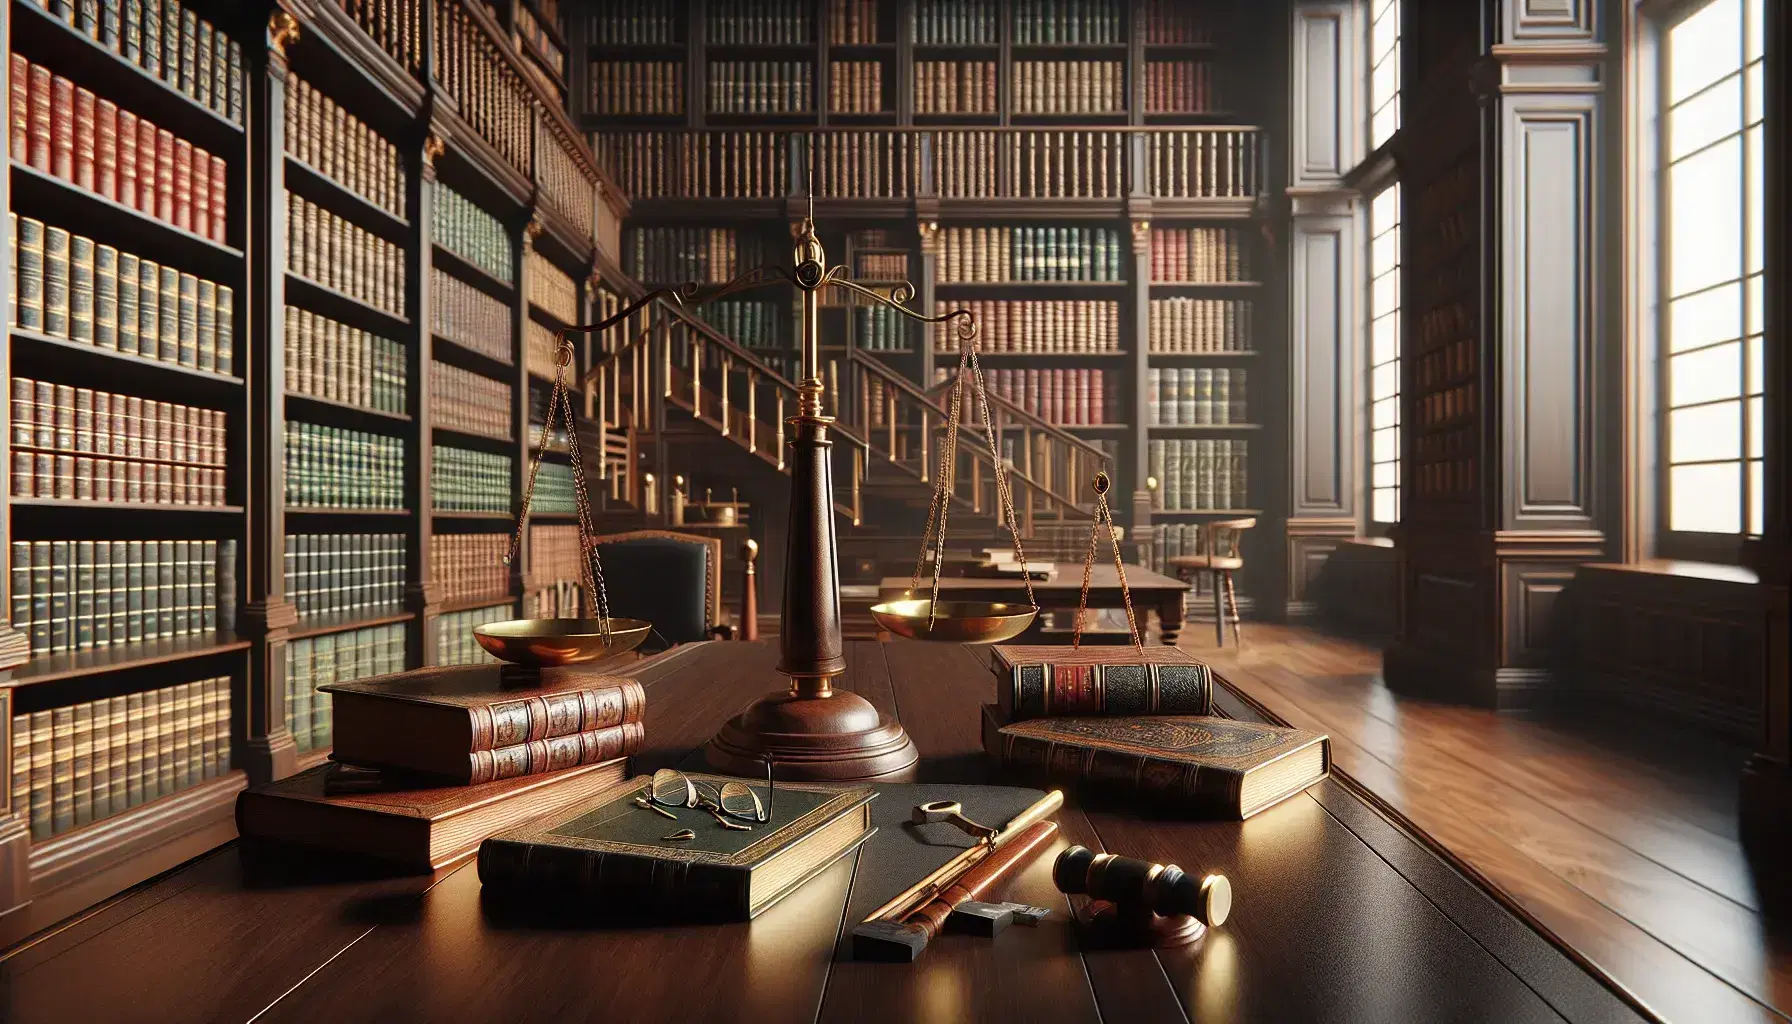 Biblioteca clásica con estanterías de madera oscura llenas de libros encuadernados en cuero, mesa con balanza de bronce y gafas, luz natural y escalera de madera.